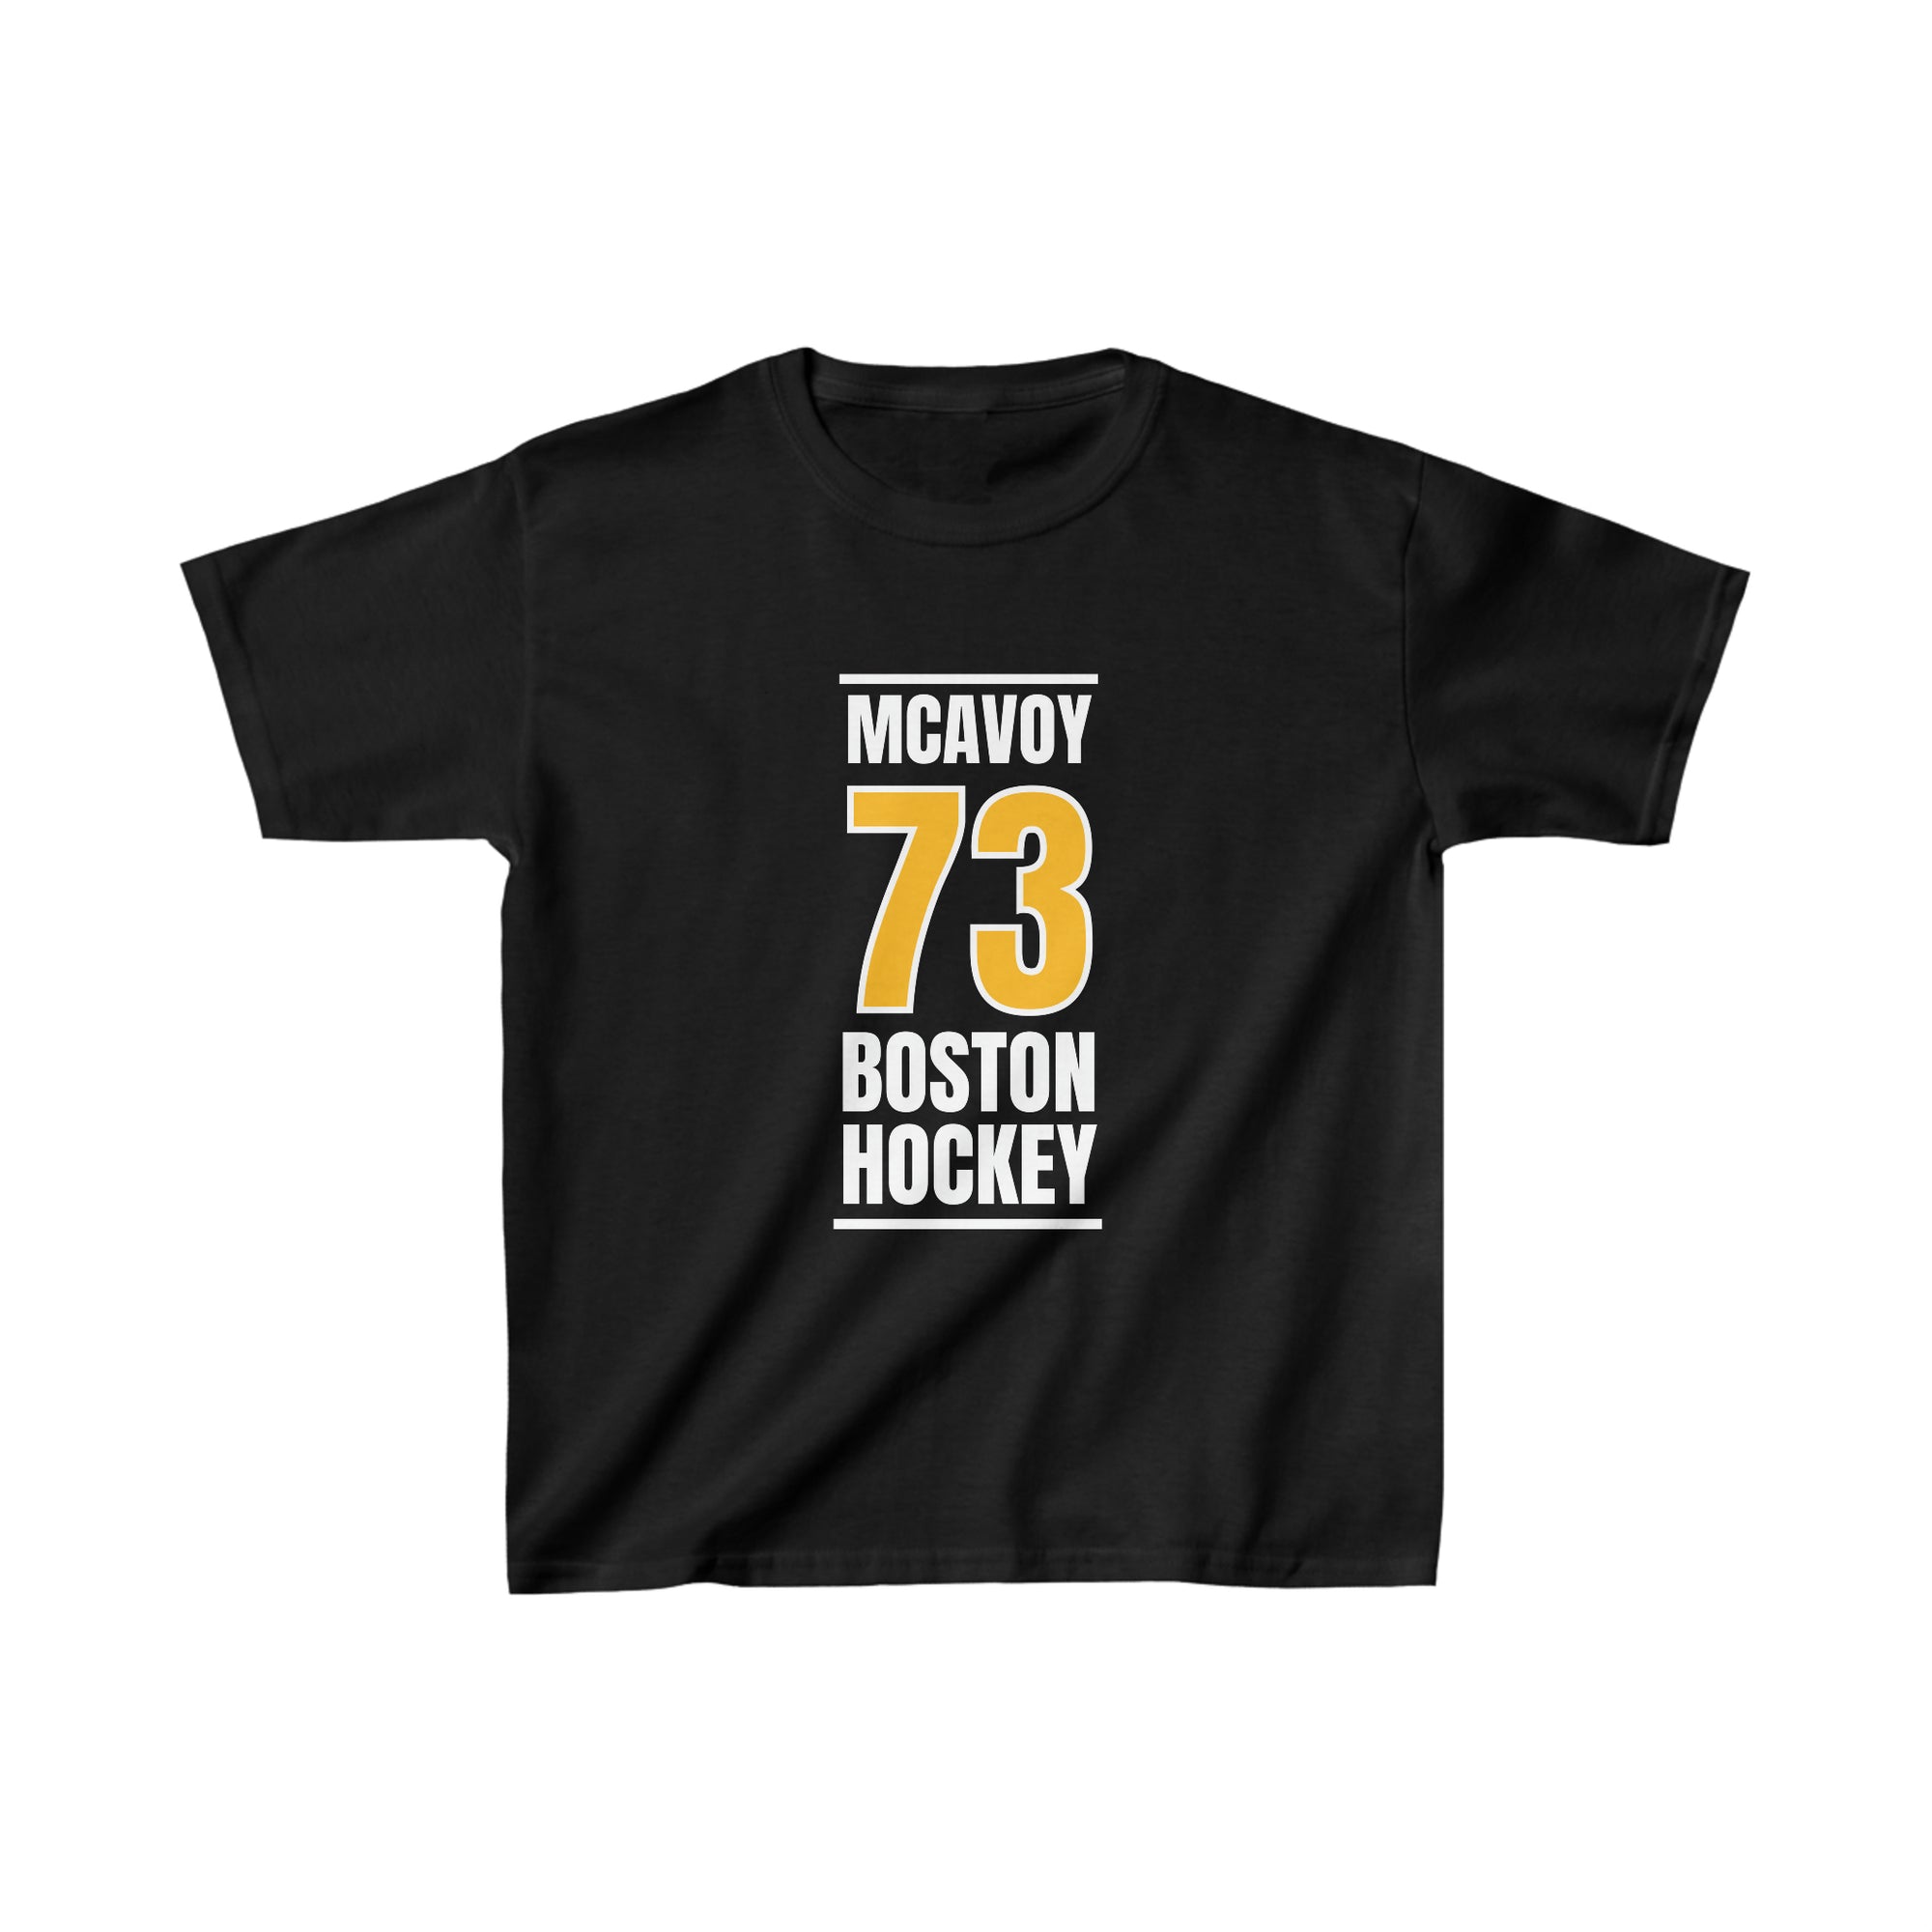 McAvoy 73 Boston Hockey Gold Vertical Design Kids Tee